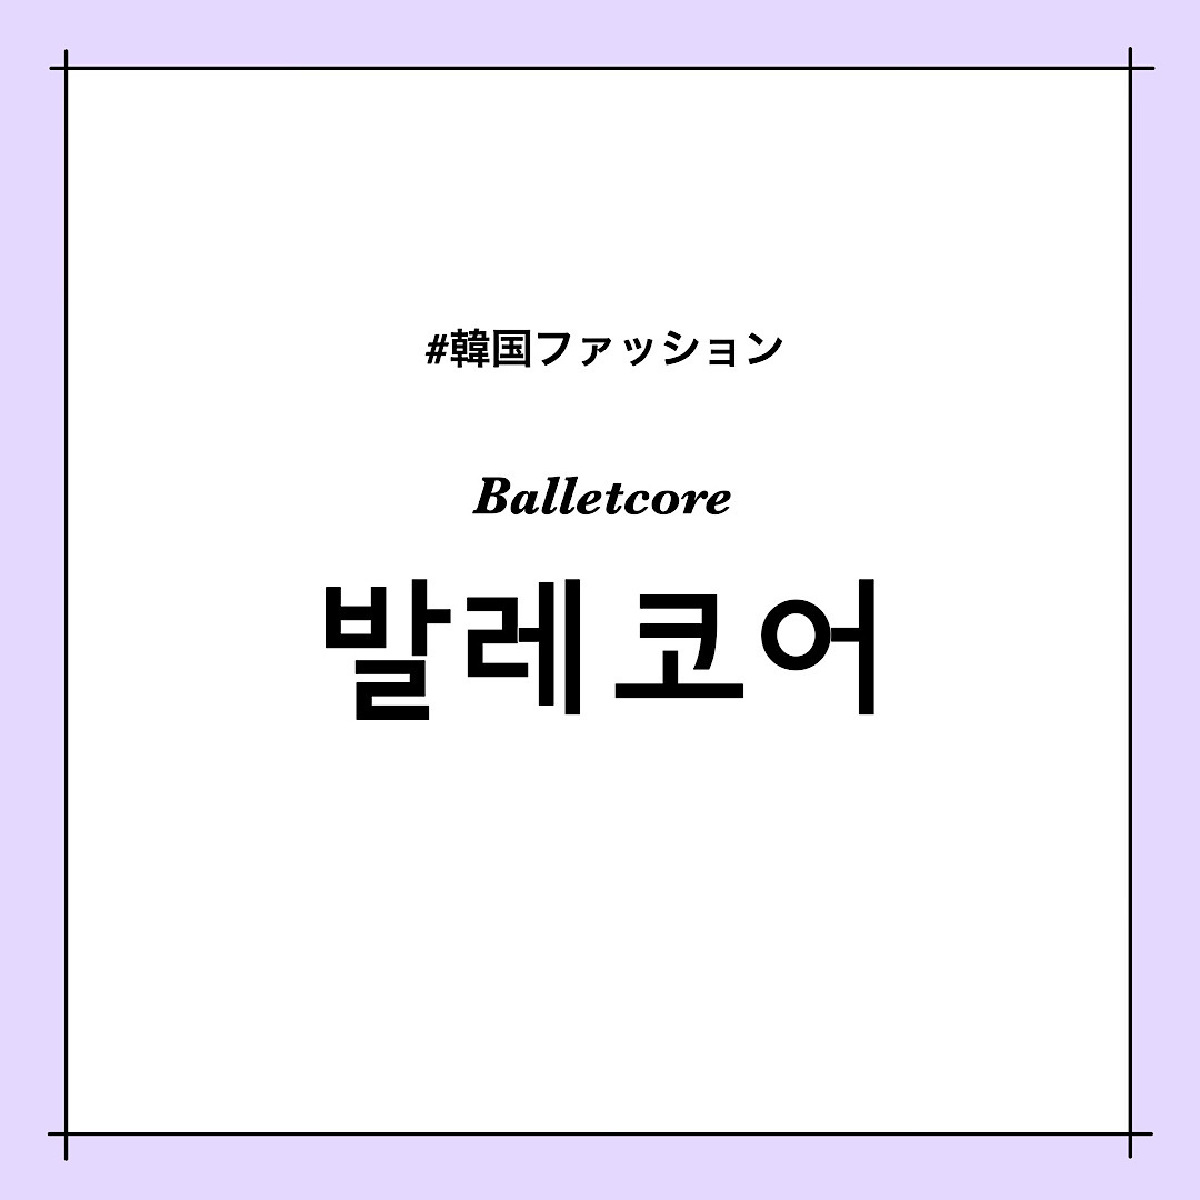 韓国ファッションの最新トレンド②「バレエコア」って？【韓国カルチャー通信 #243】